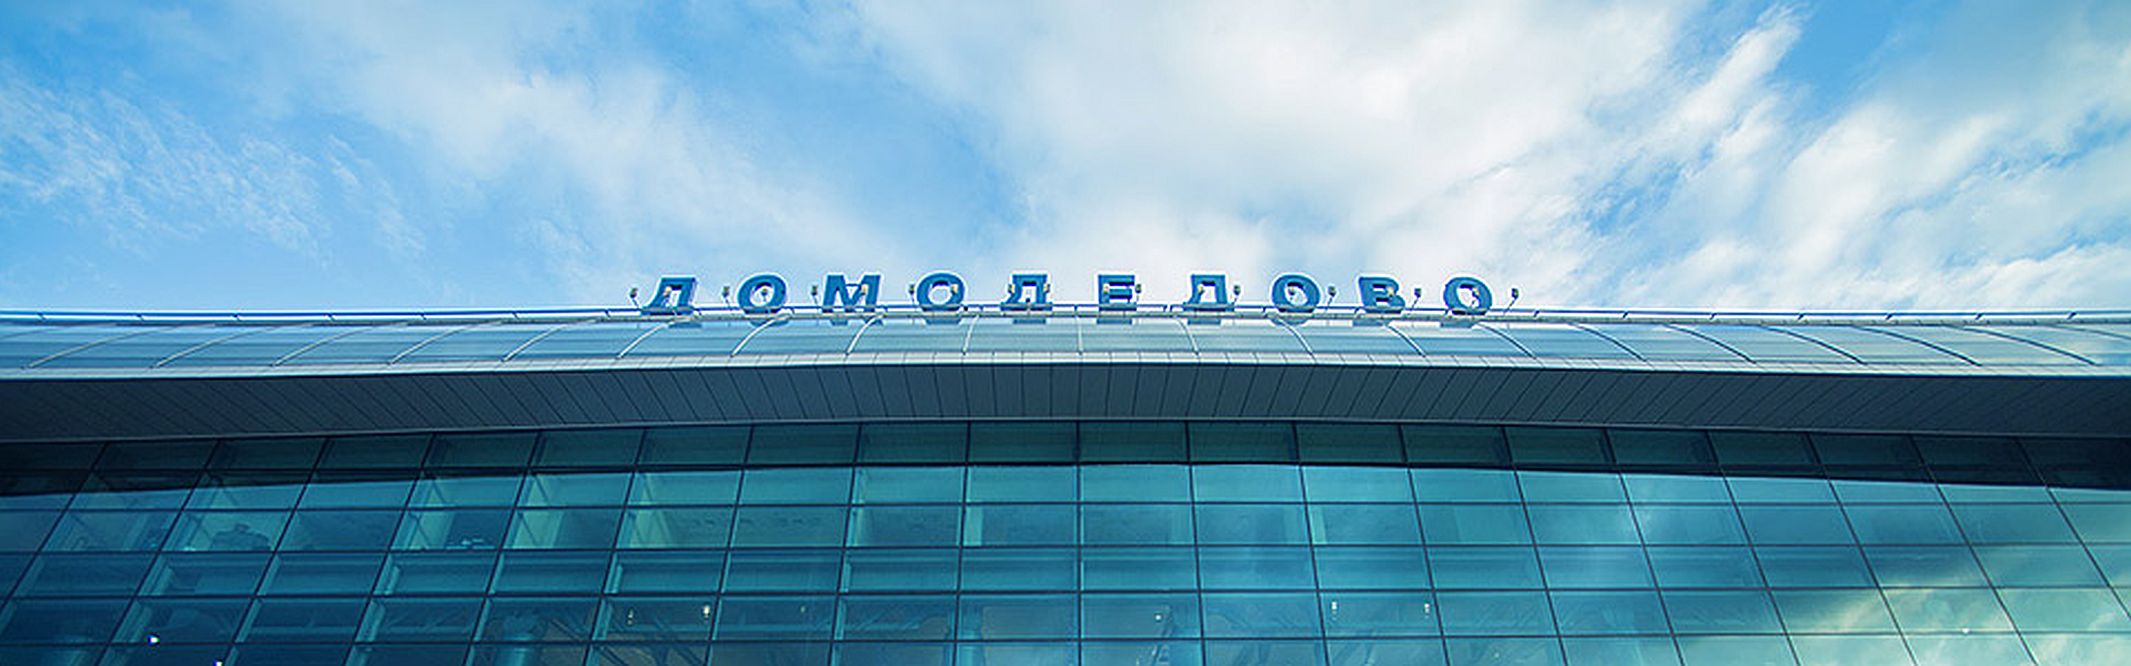 Росавиация получит почти 9 млрд рублей на завершение реконструкции "Домодедово"